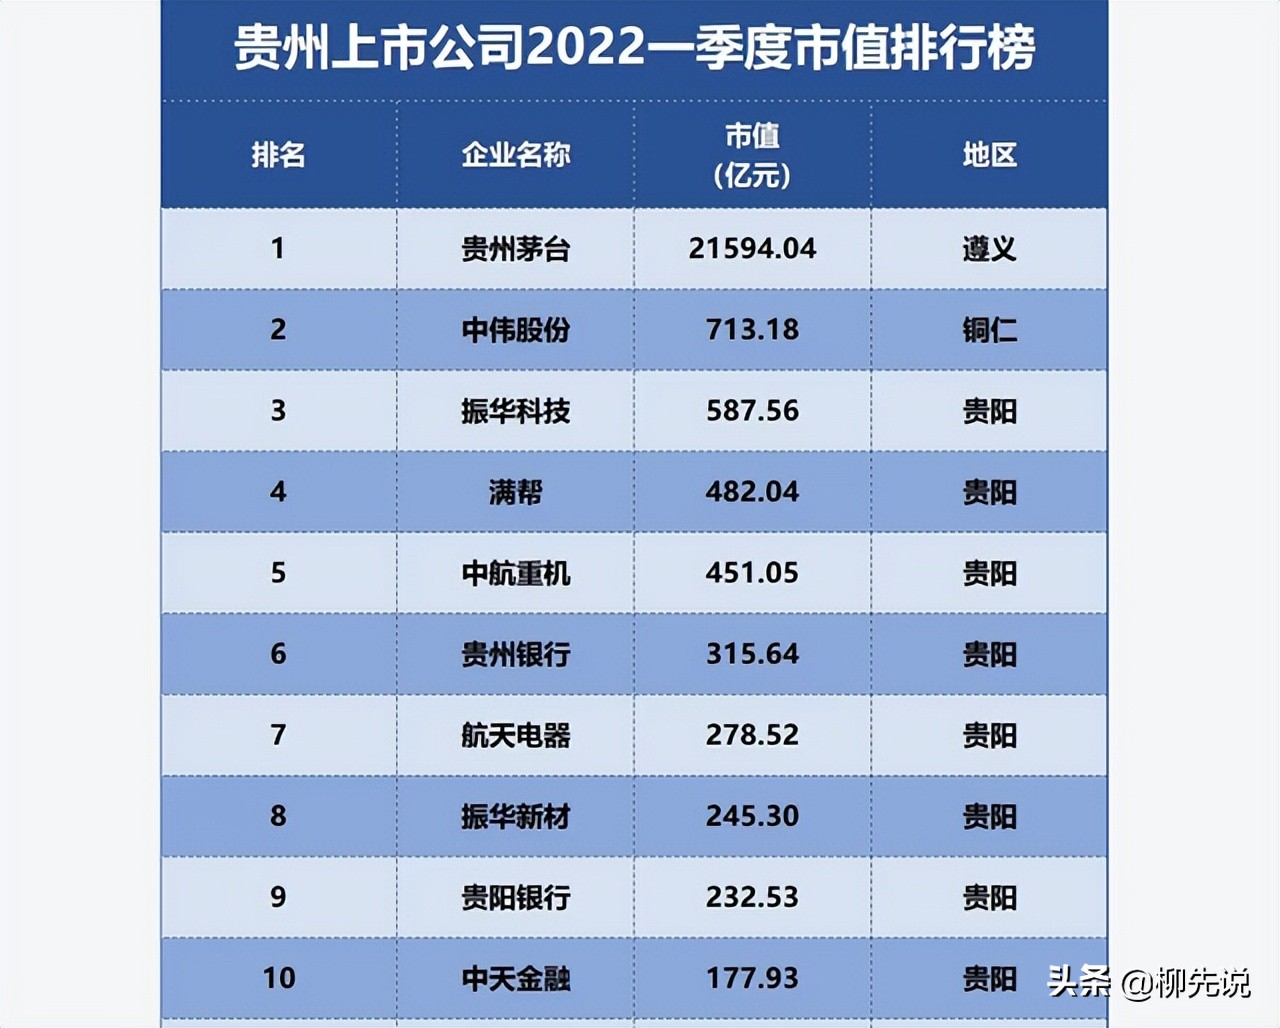 2022贵州上市公司排位：茅台位置不变，满帮排第4，航天电器排第7